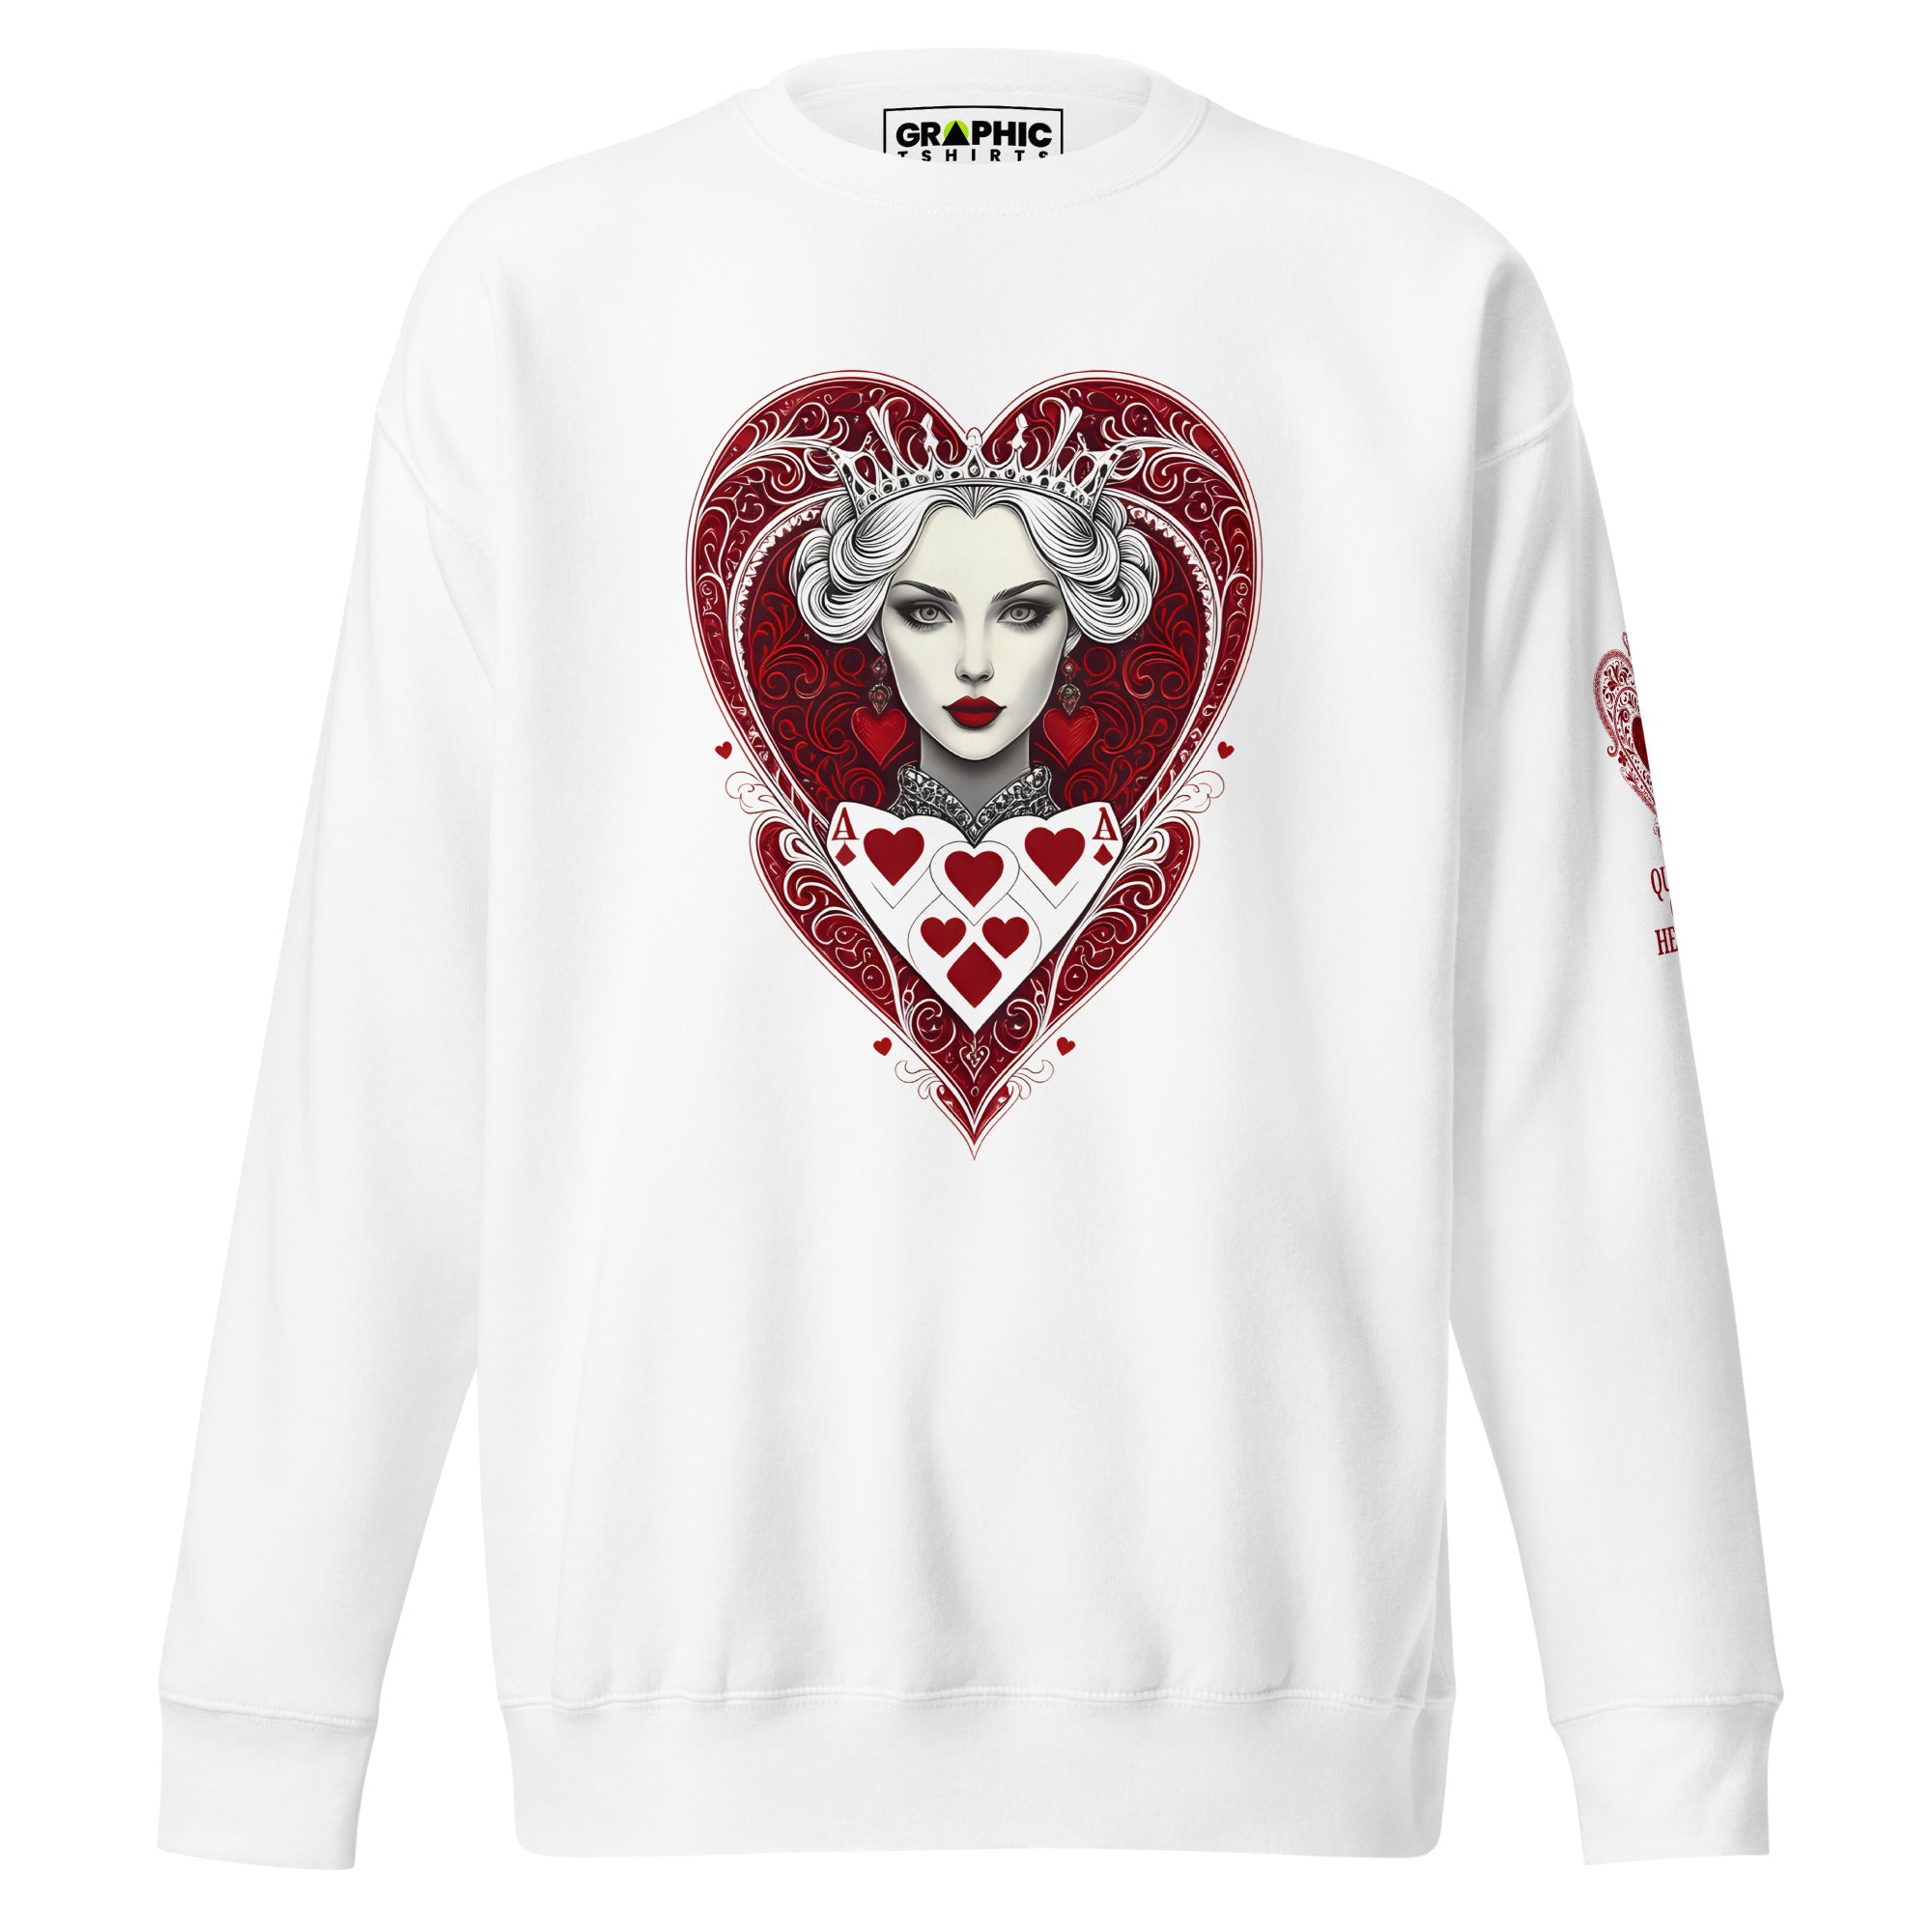 Unisex Premium Sweatshirt - Queen Of Hearts Series v.16